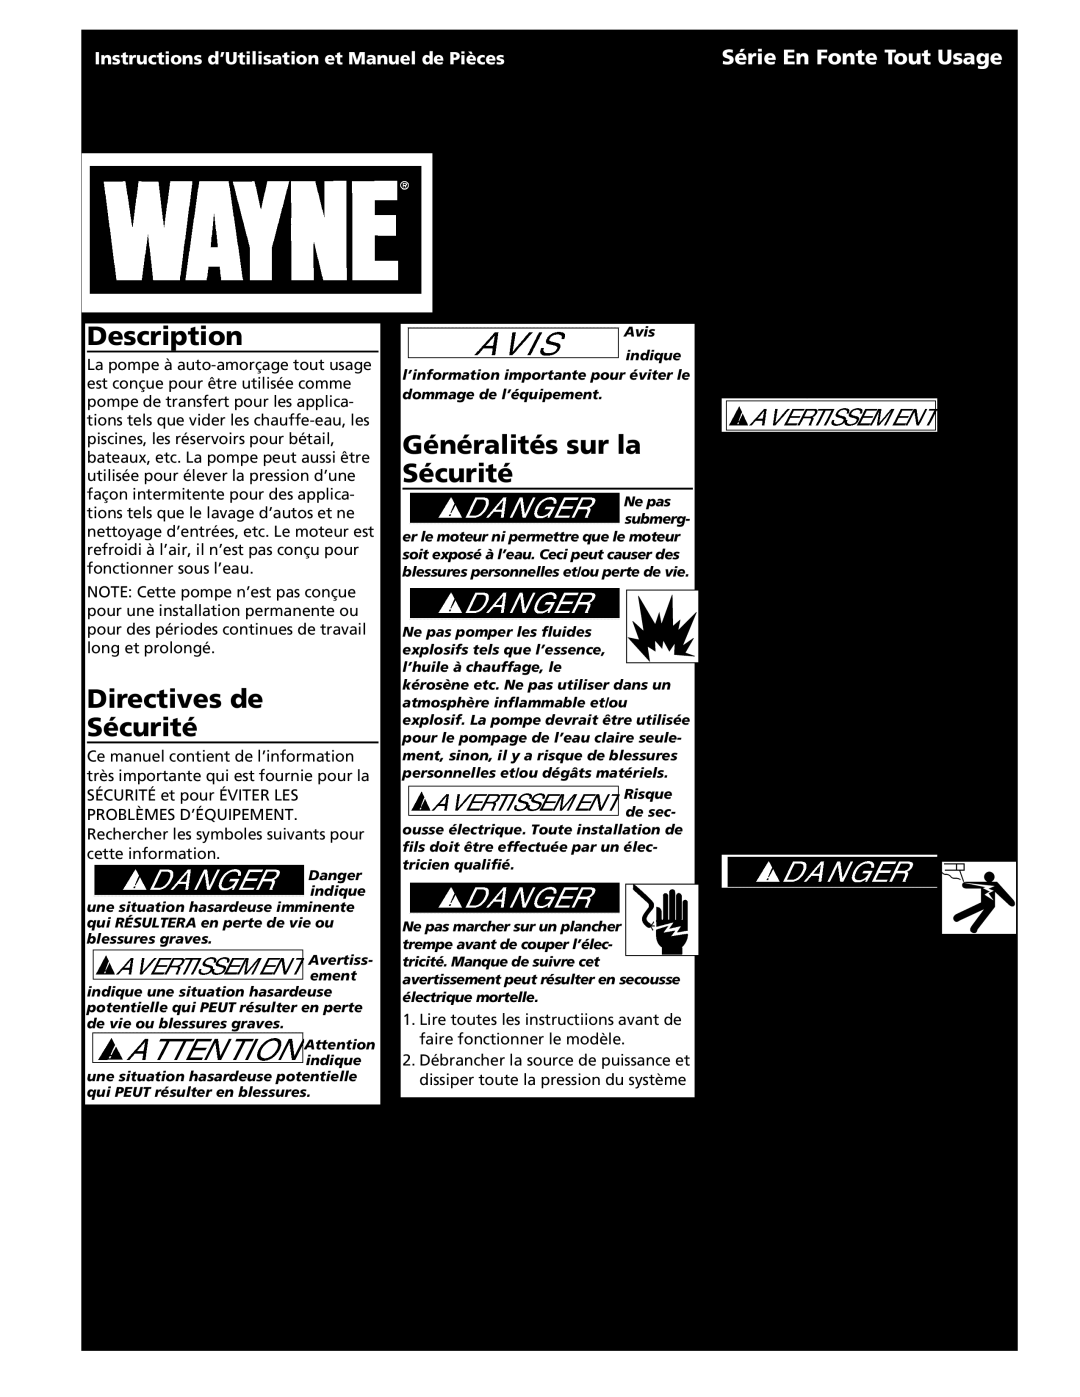 Wayne 321304-001 Directives de Sécurité, Généralités sur la Sécurité, Spécifications, Série En Fonte Tout Usage, 1 Fr 